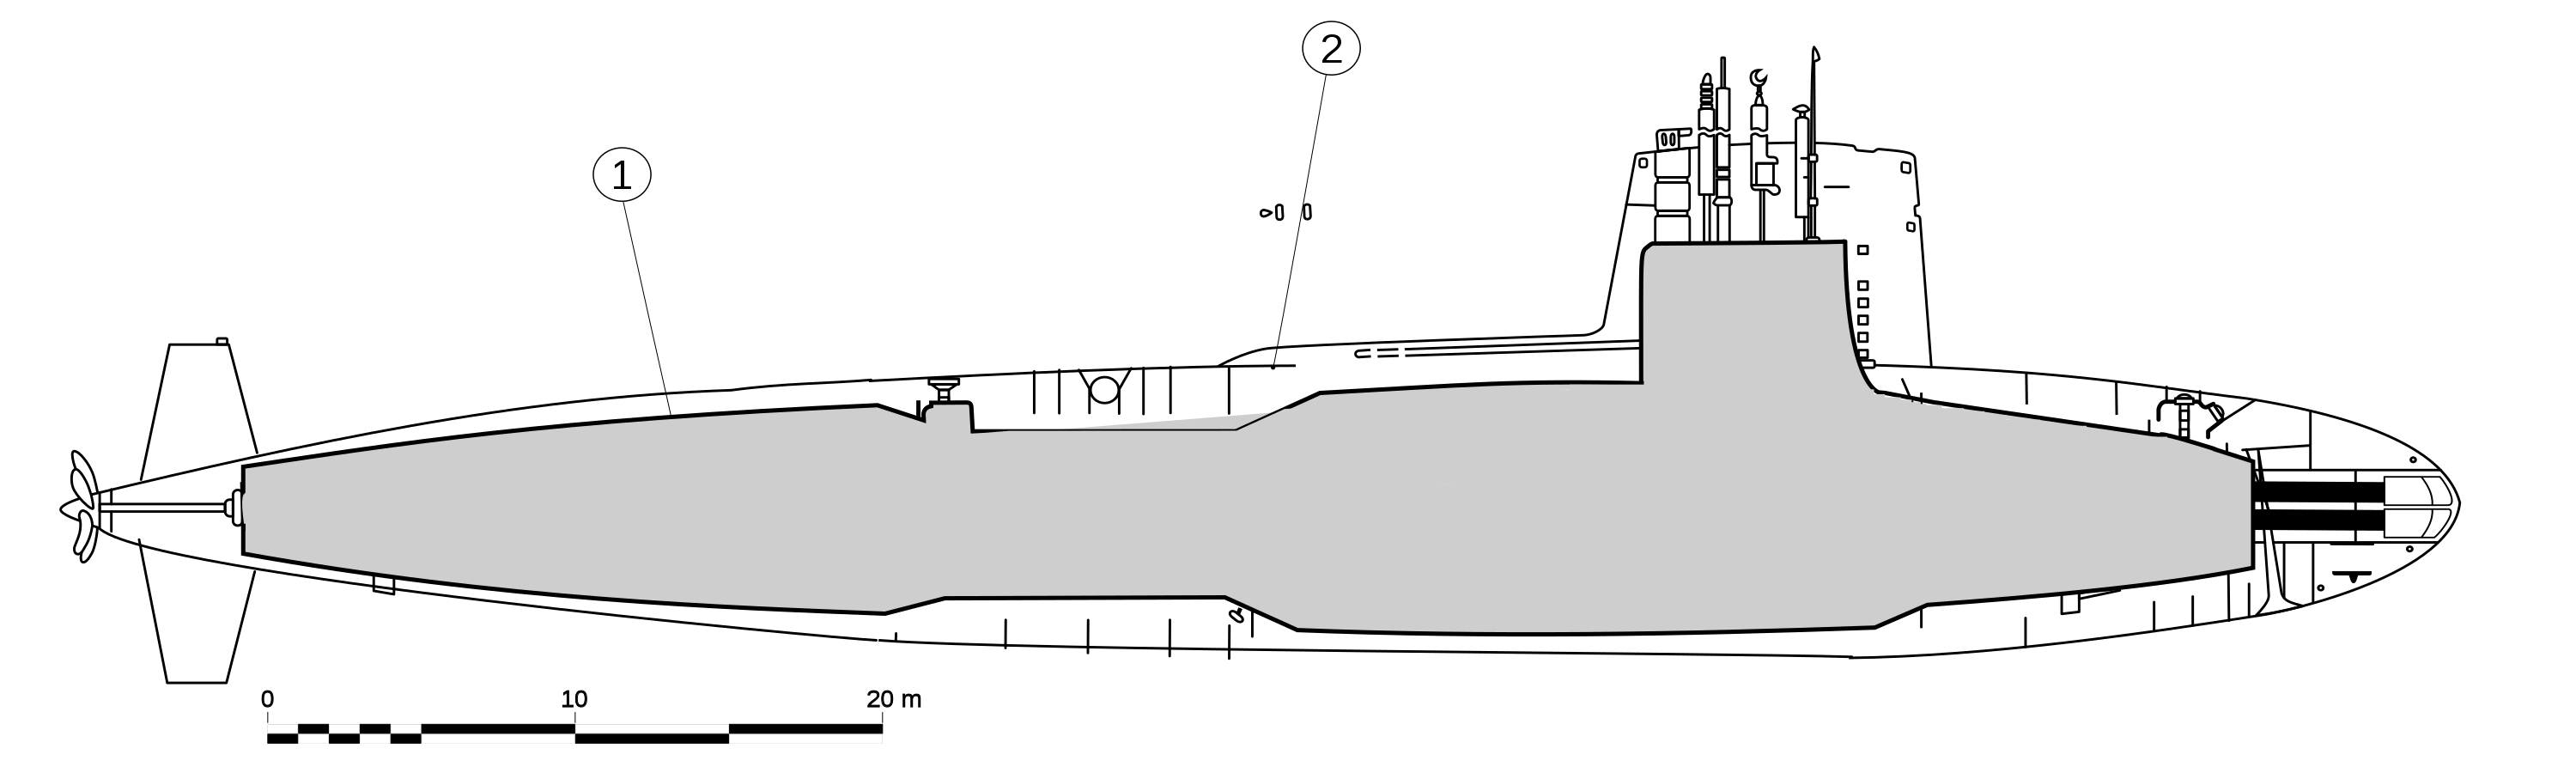 Корпус пл. Type 212 Submarine чертеж. Лодка акула 941 схема отсеков. Подводная лодка акула 1909 чертежи. Подводная лодка акула проект 941 схема.